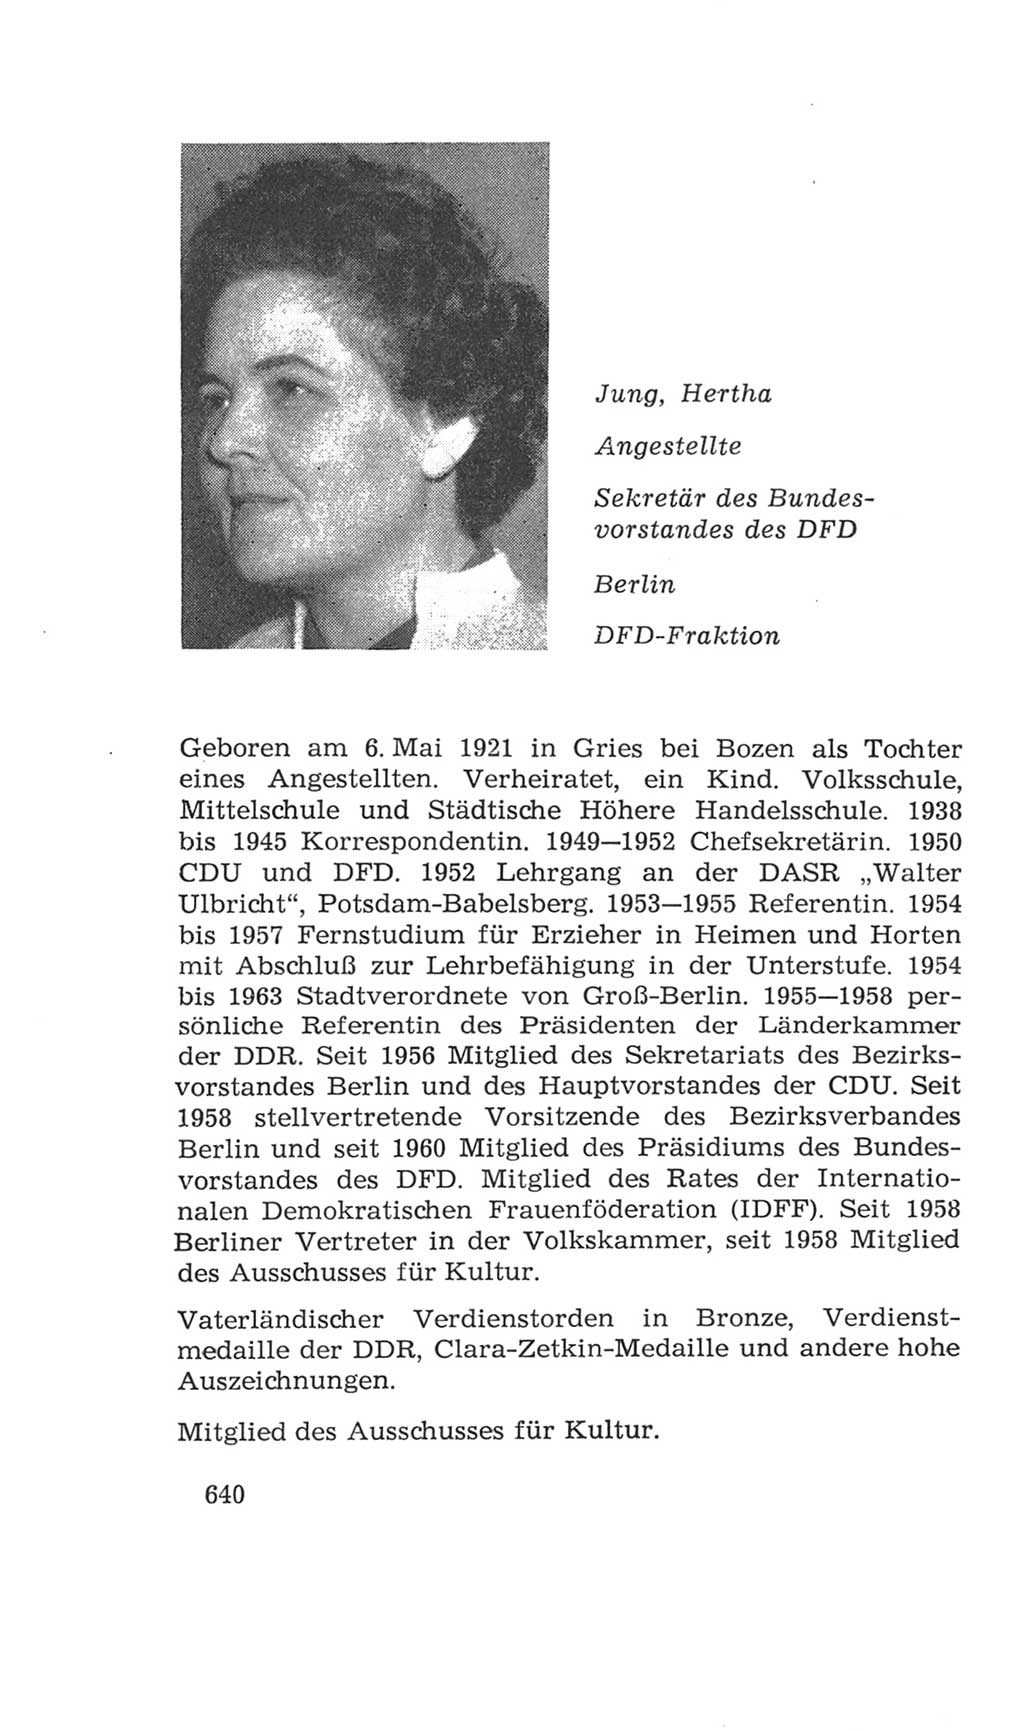 Volkskammer (VK) der Deutschen Demokratischen Republik (DDR), 4. Wahlperiode 1963-1967, Seite 640 (VK. DDR 4. WP. 1963-1967, S. 640)